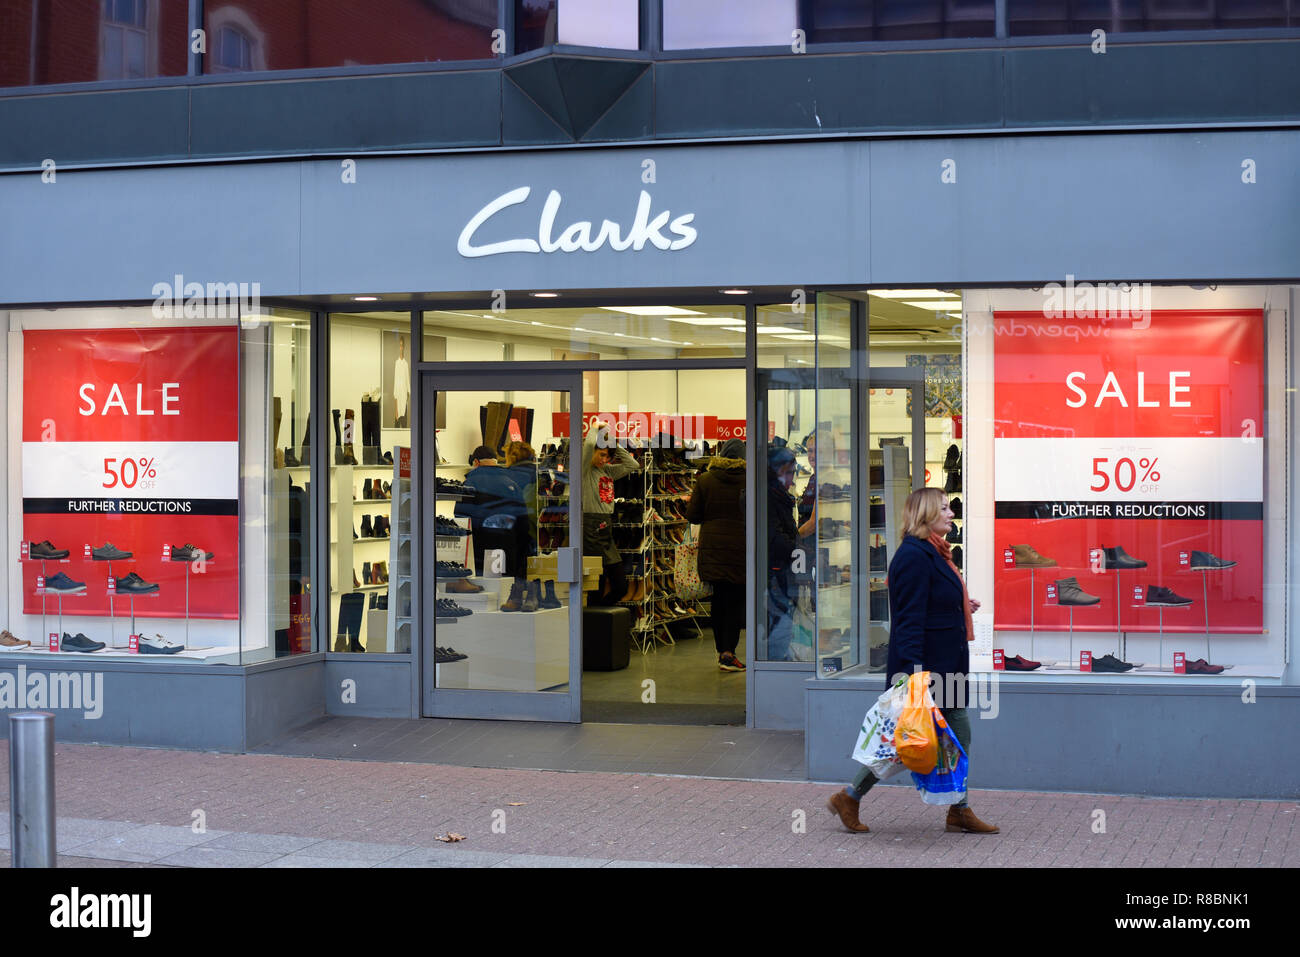 Chaussures Clarks Banque d'image et 